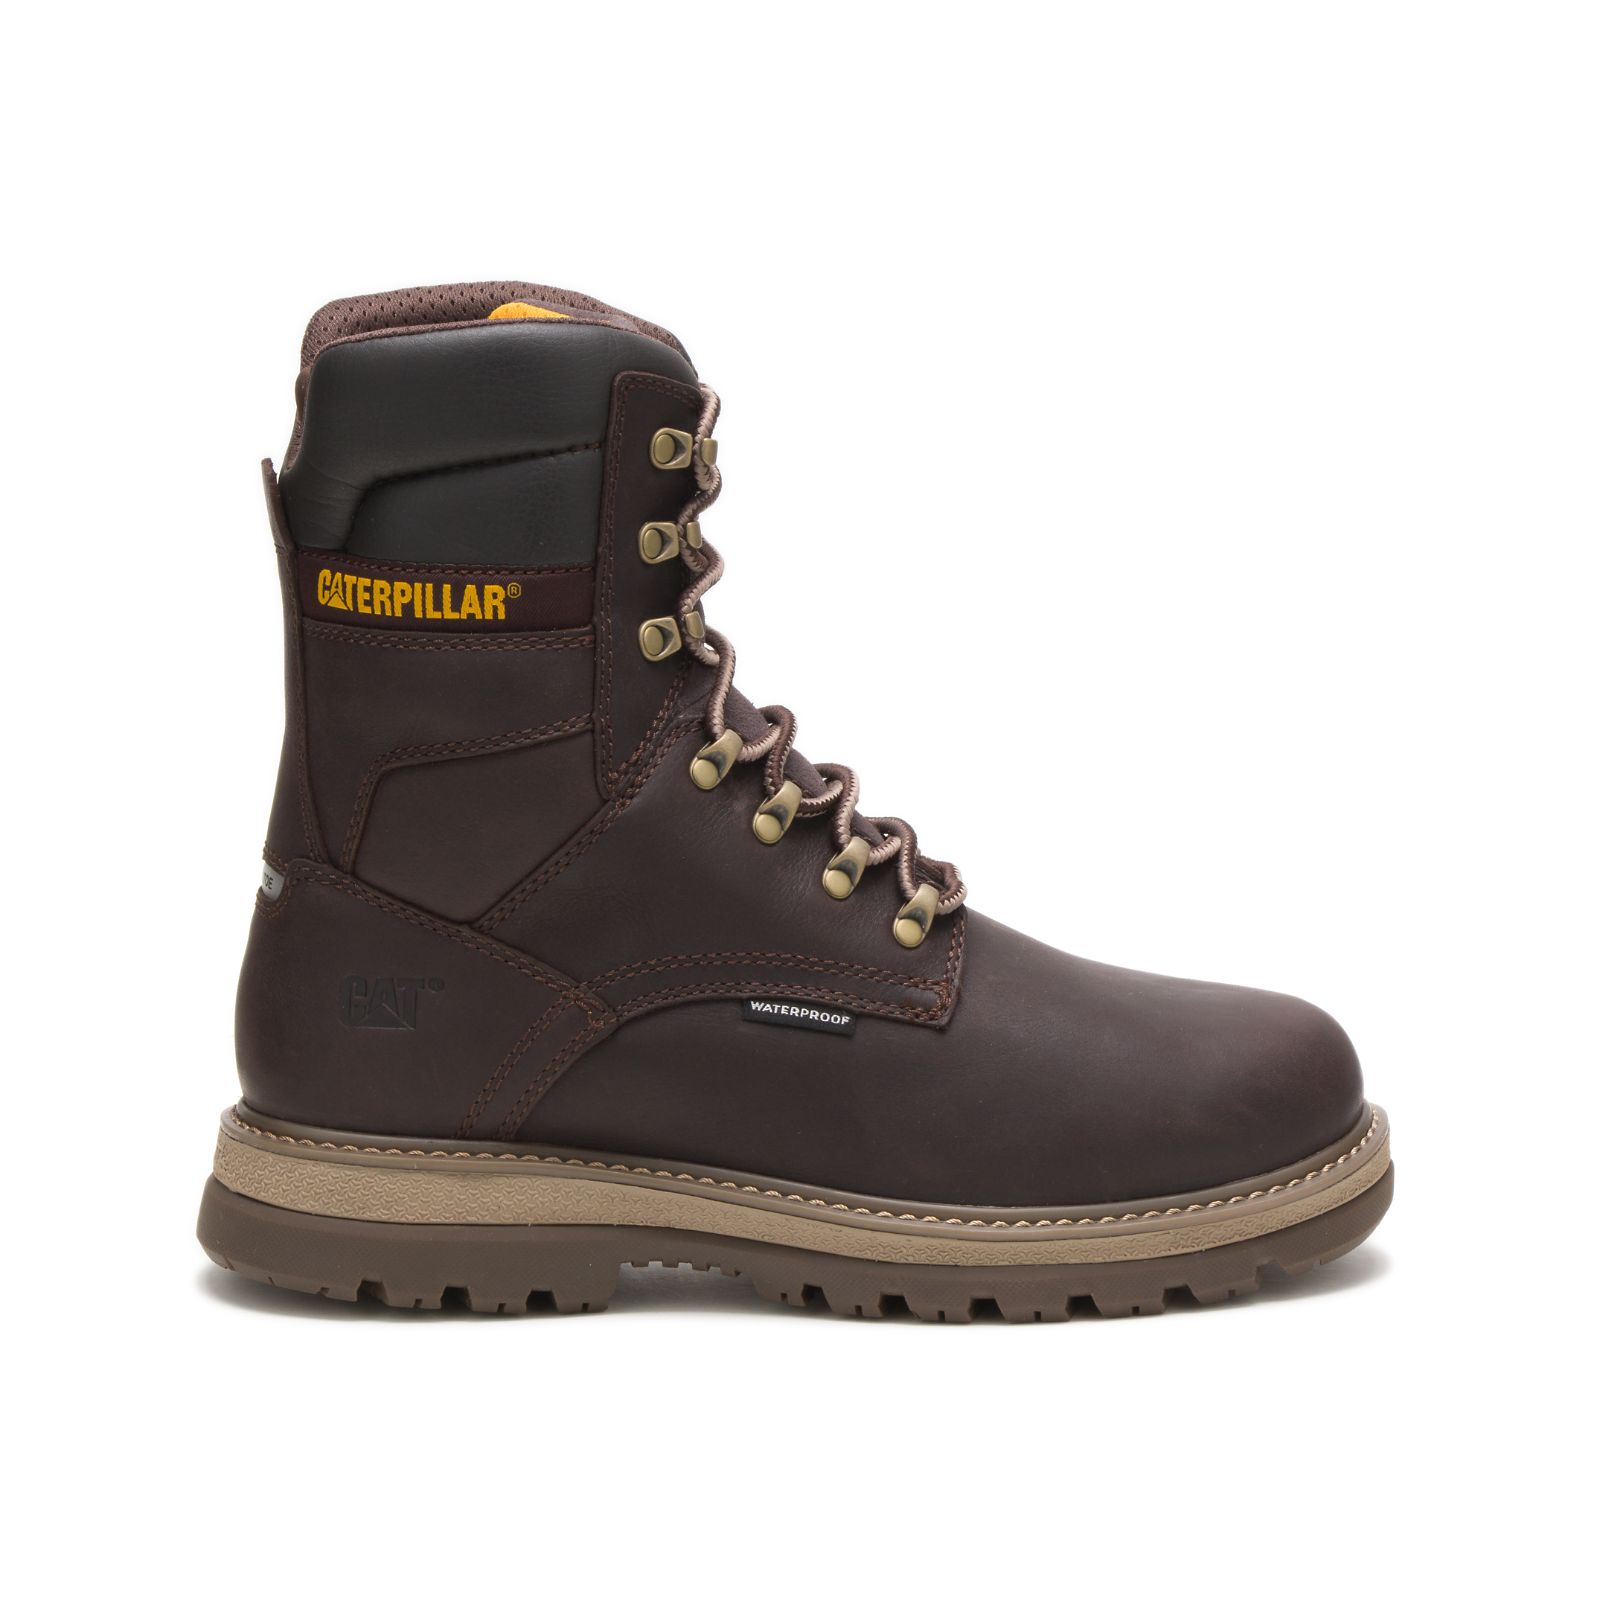 Men's Caterpillar Fairbanks 8" Waterproof Tx Steel Toe Work Boots Brown | Cat-520197